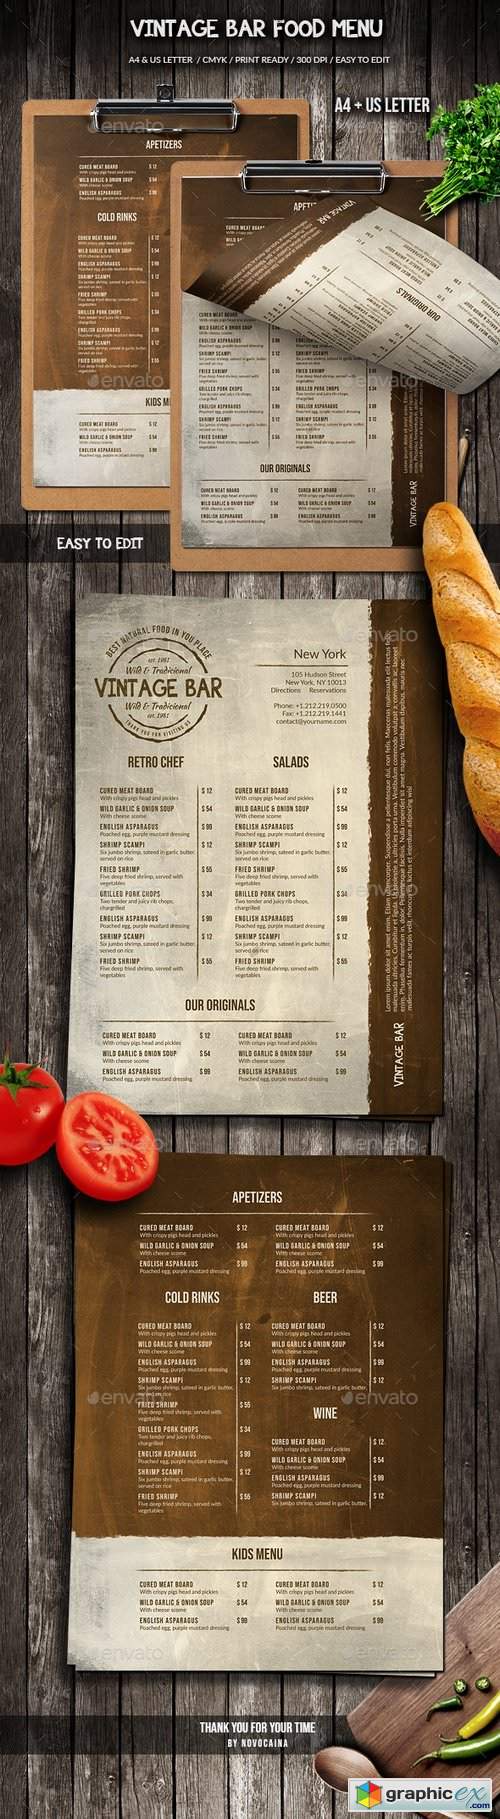 Vintage Bar Food Menu Design A4 & US Letter